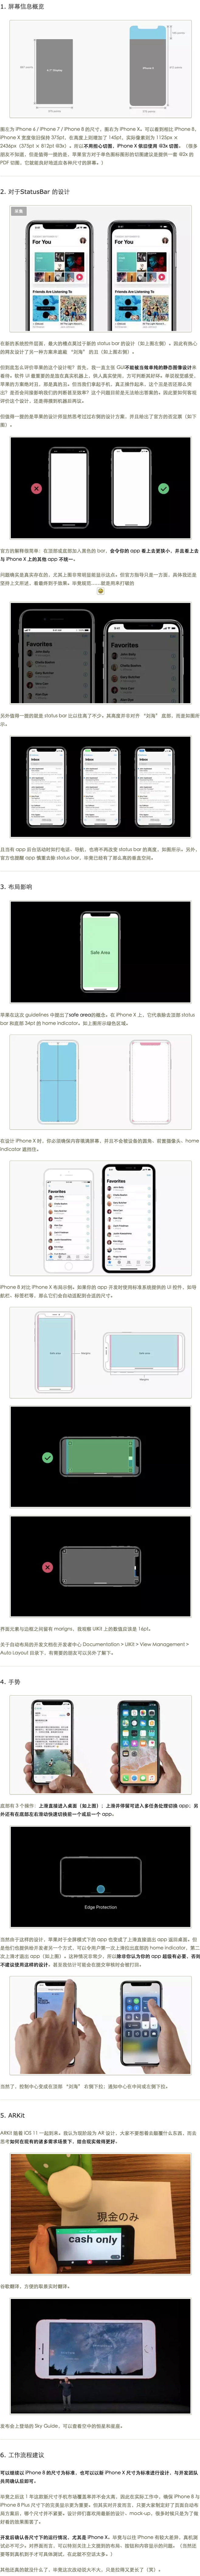 全新 iPhone X UI 设计指导